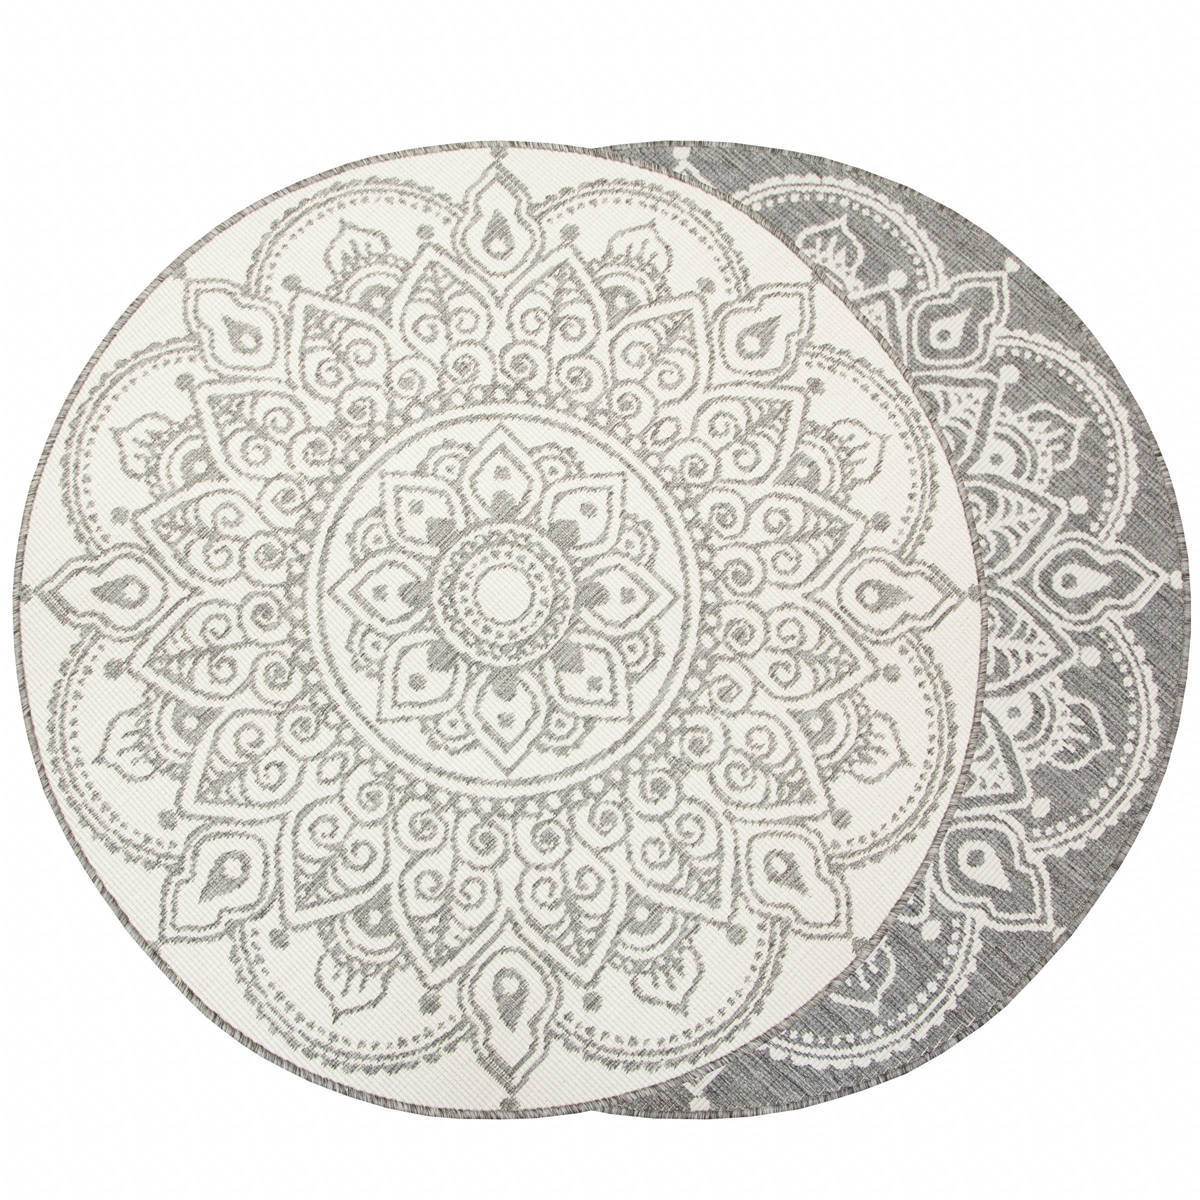 Šňůrkový oboustranný koberec Brussels 205333/10010 stříbrný kruh